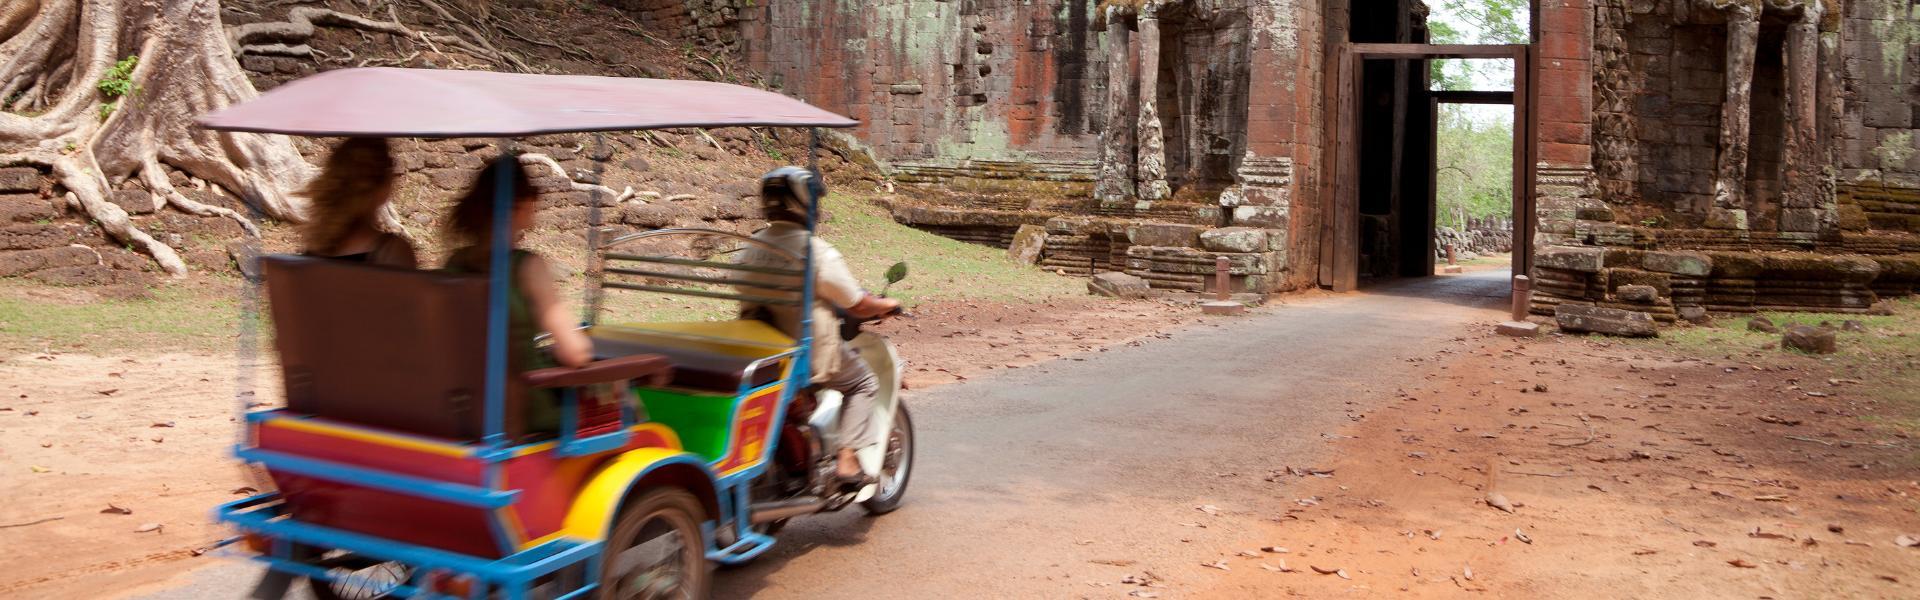 10 meilleures agences de voyage locales au Cambodge